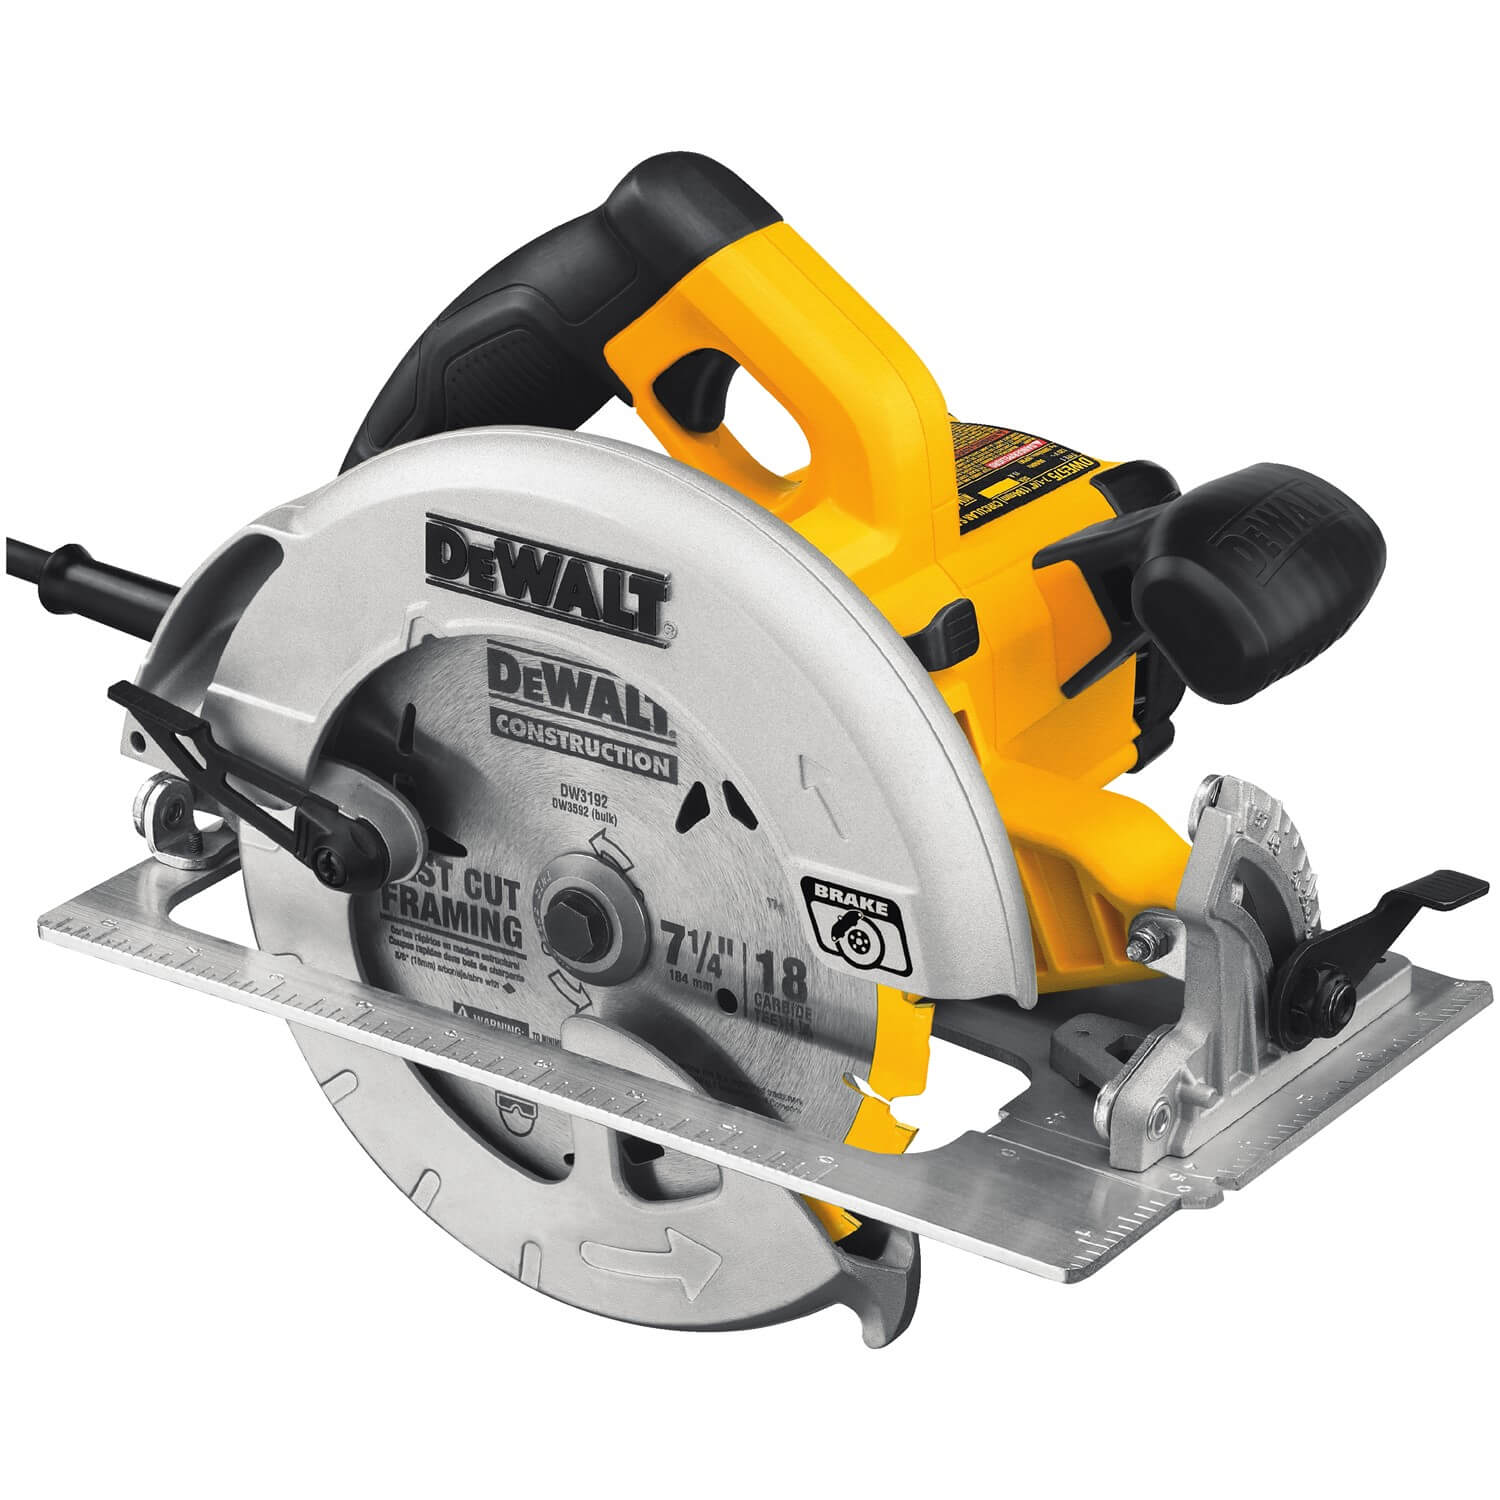 DEWALT DWE575SB - 7-1/4" Circular Saw with Electric Brake - wise-line-tools